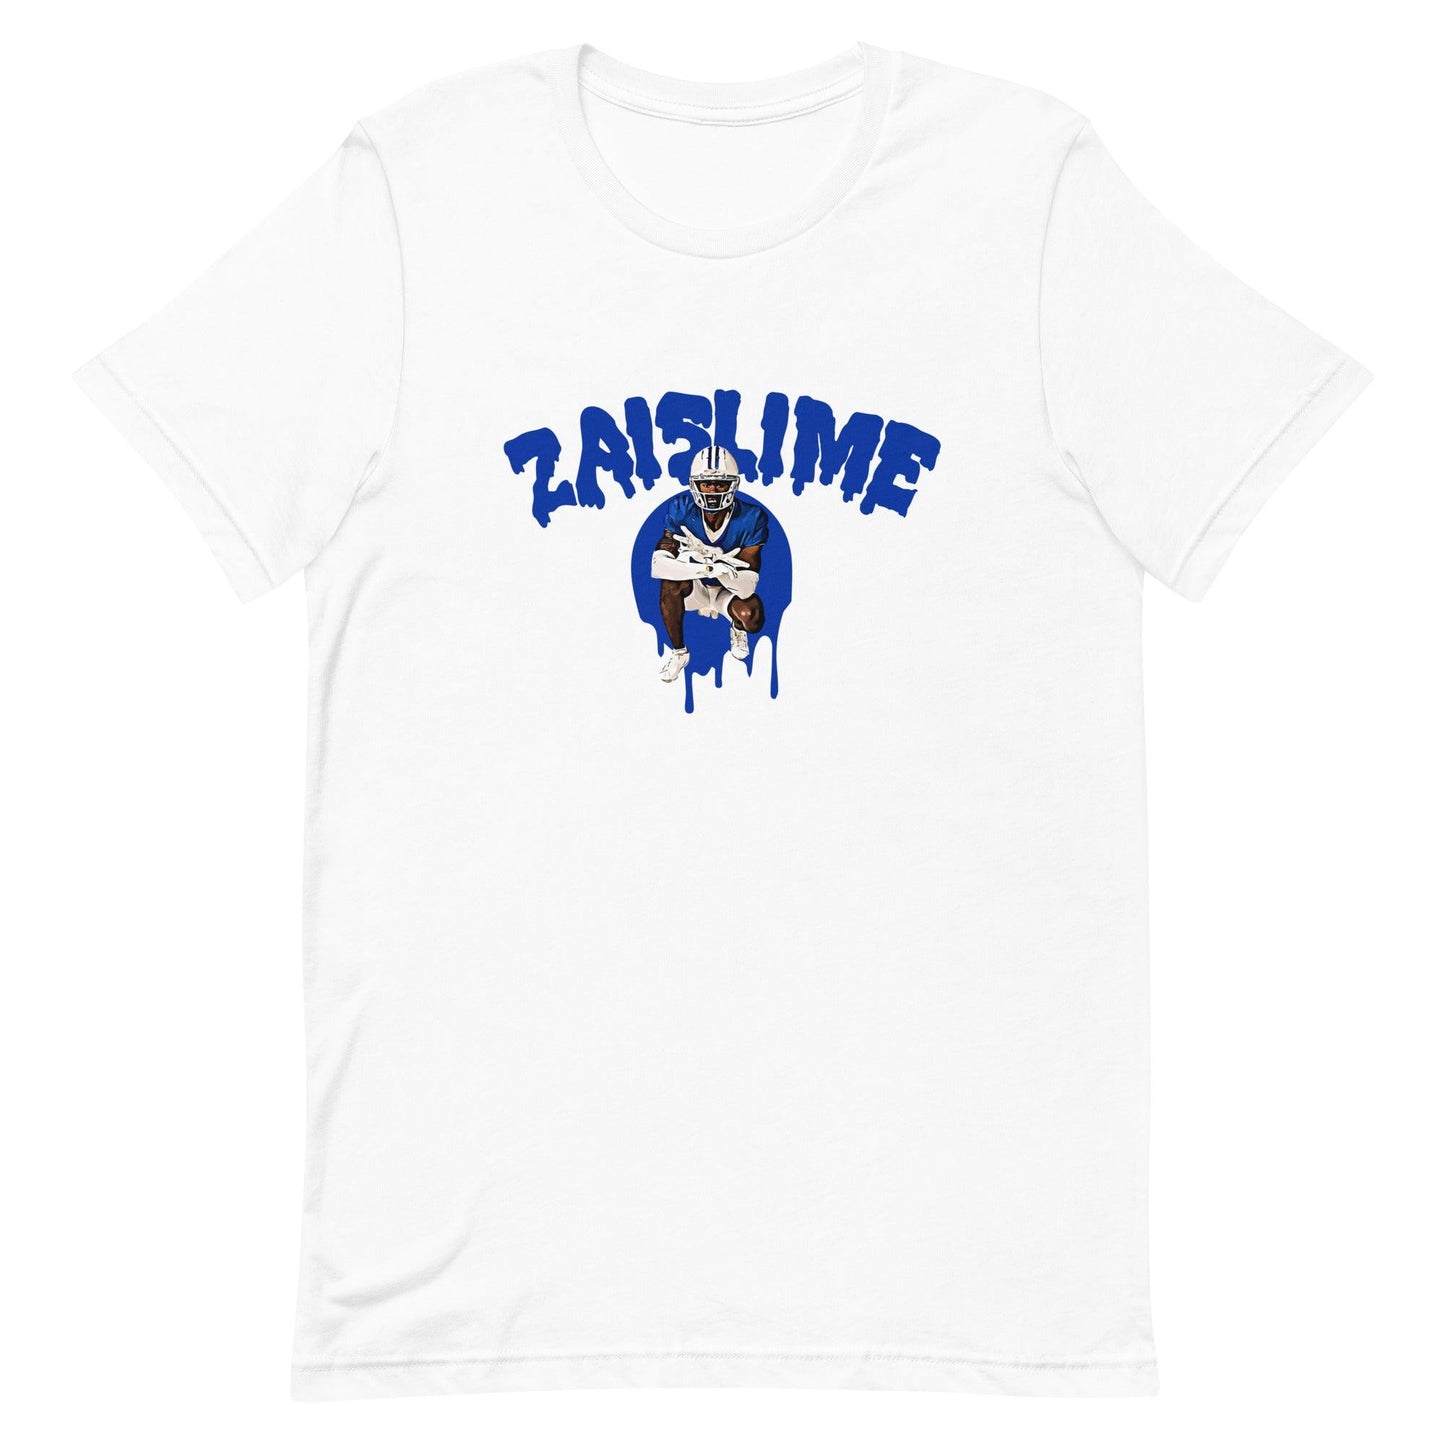 Izaiah Gathings “Zaislime” t-shirt - Fan Arch